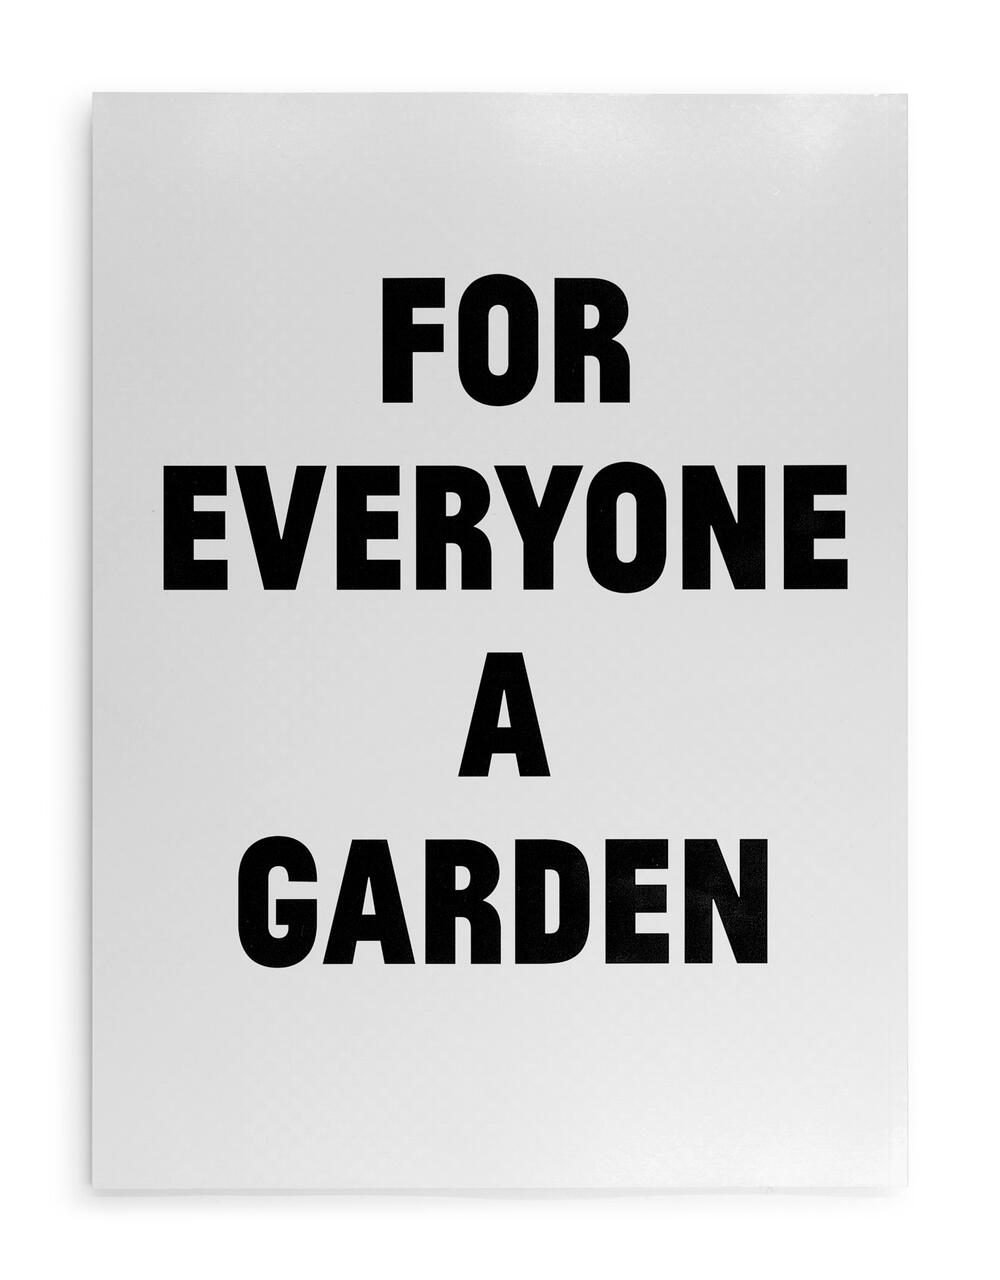 16C-057_David Hartt: for everyone a garden - Exhibition Catalog_James Goggin/David Hartt